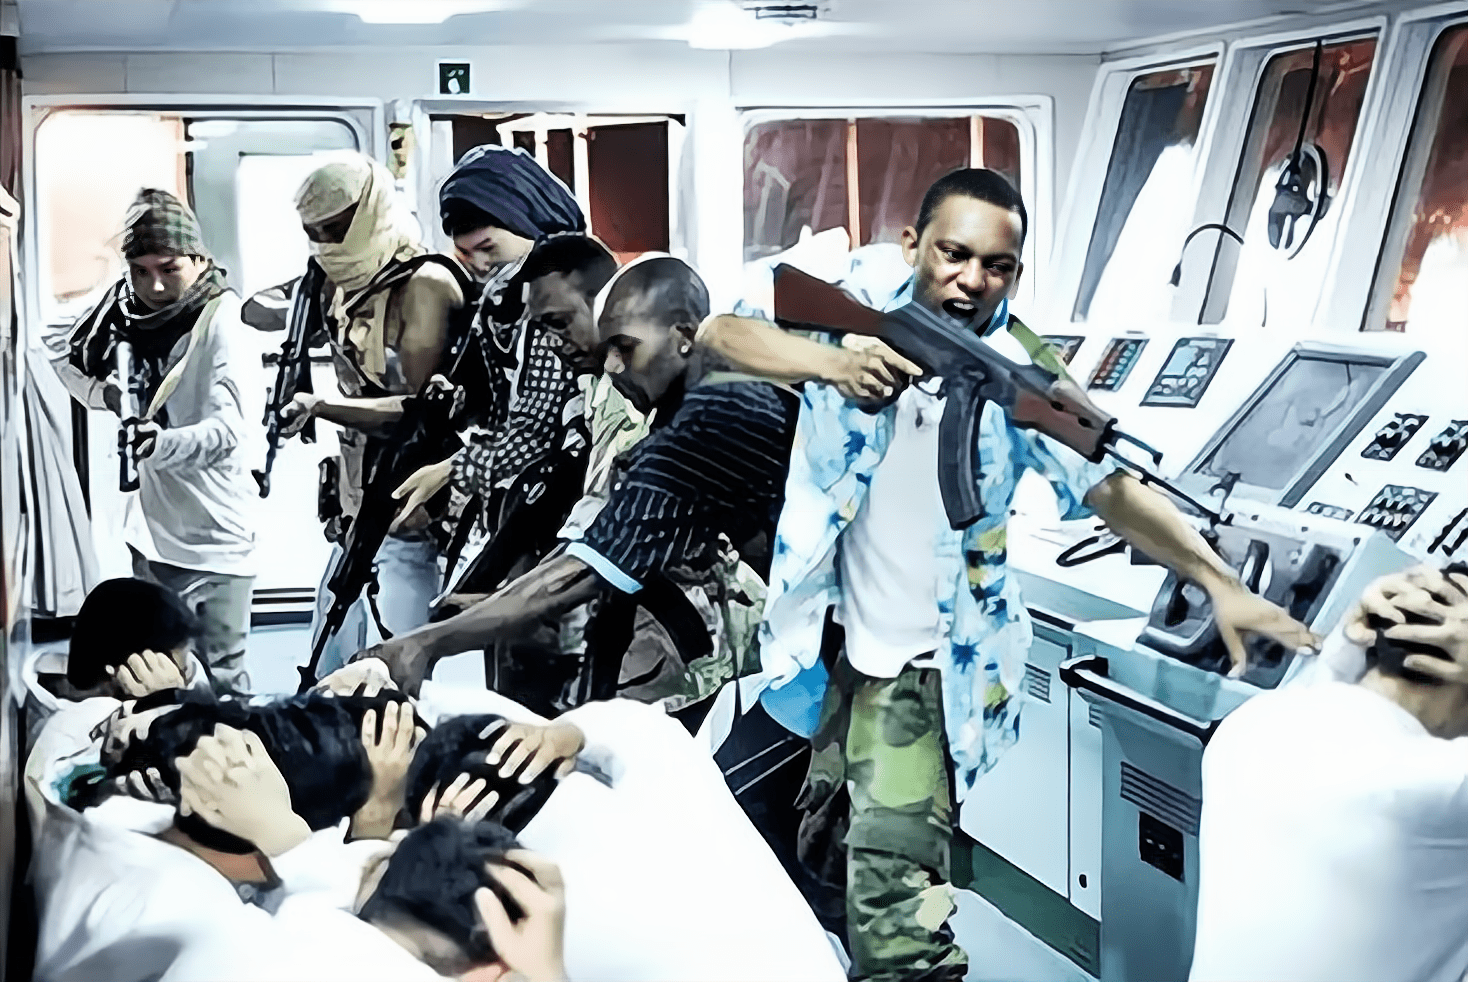 原创21年前索马里海盗打劫中国渔船被18名渔民生擒高喊我投降